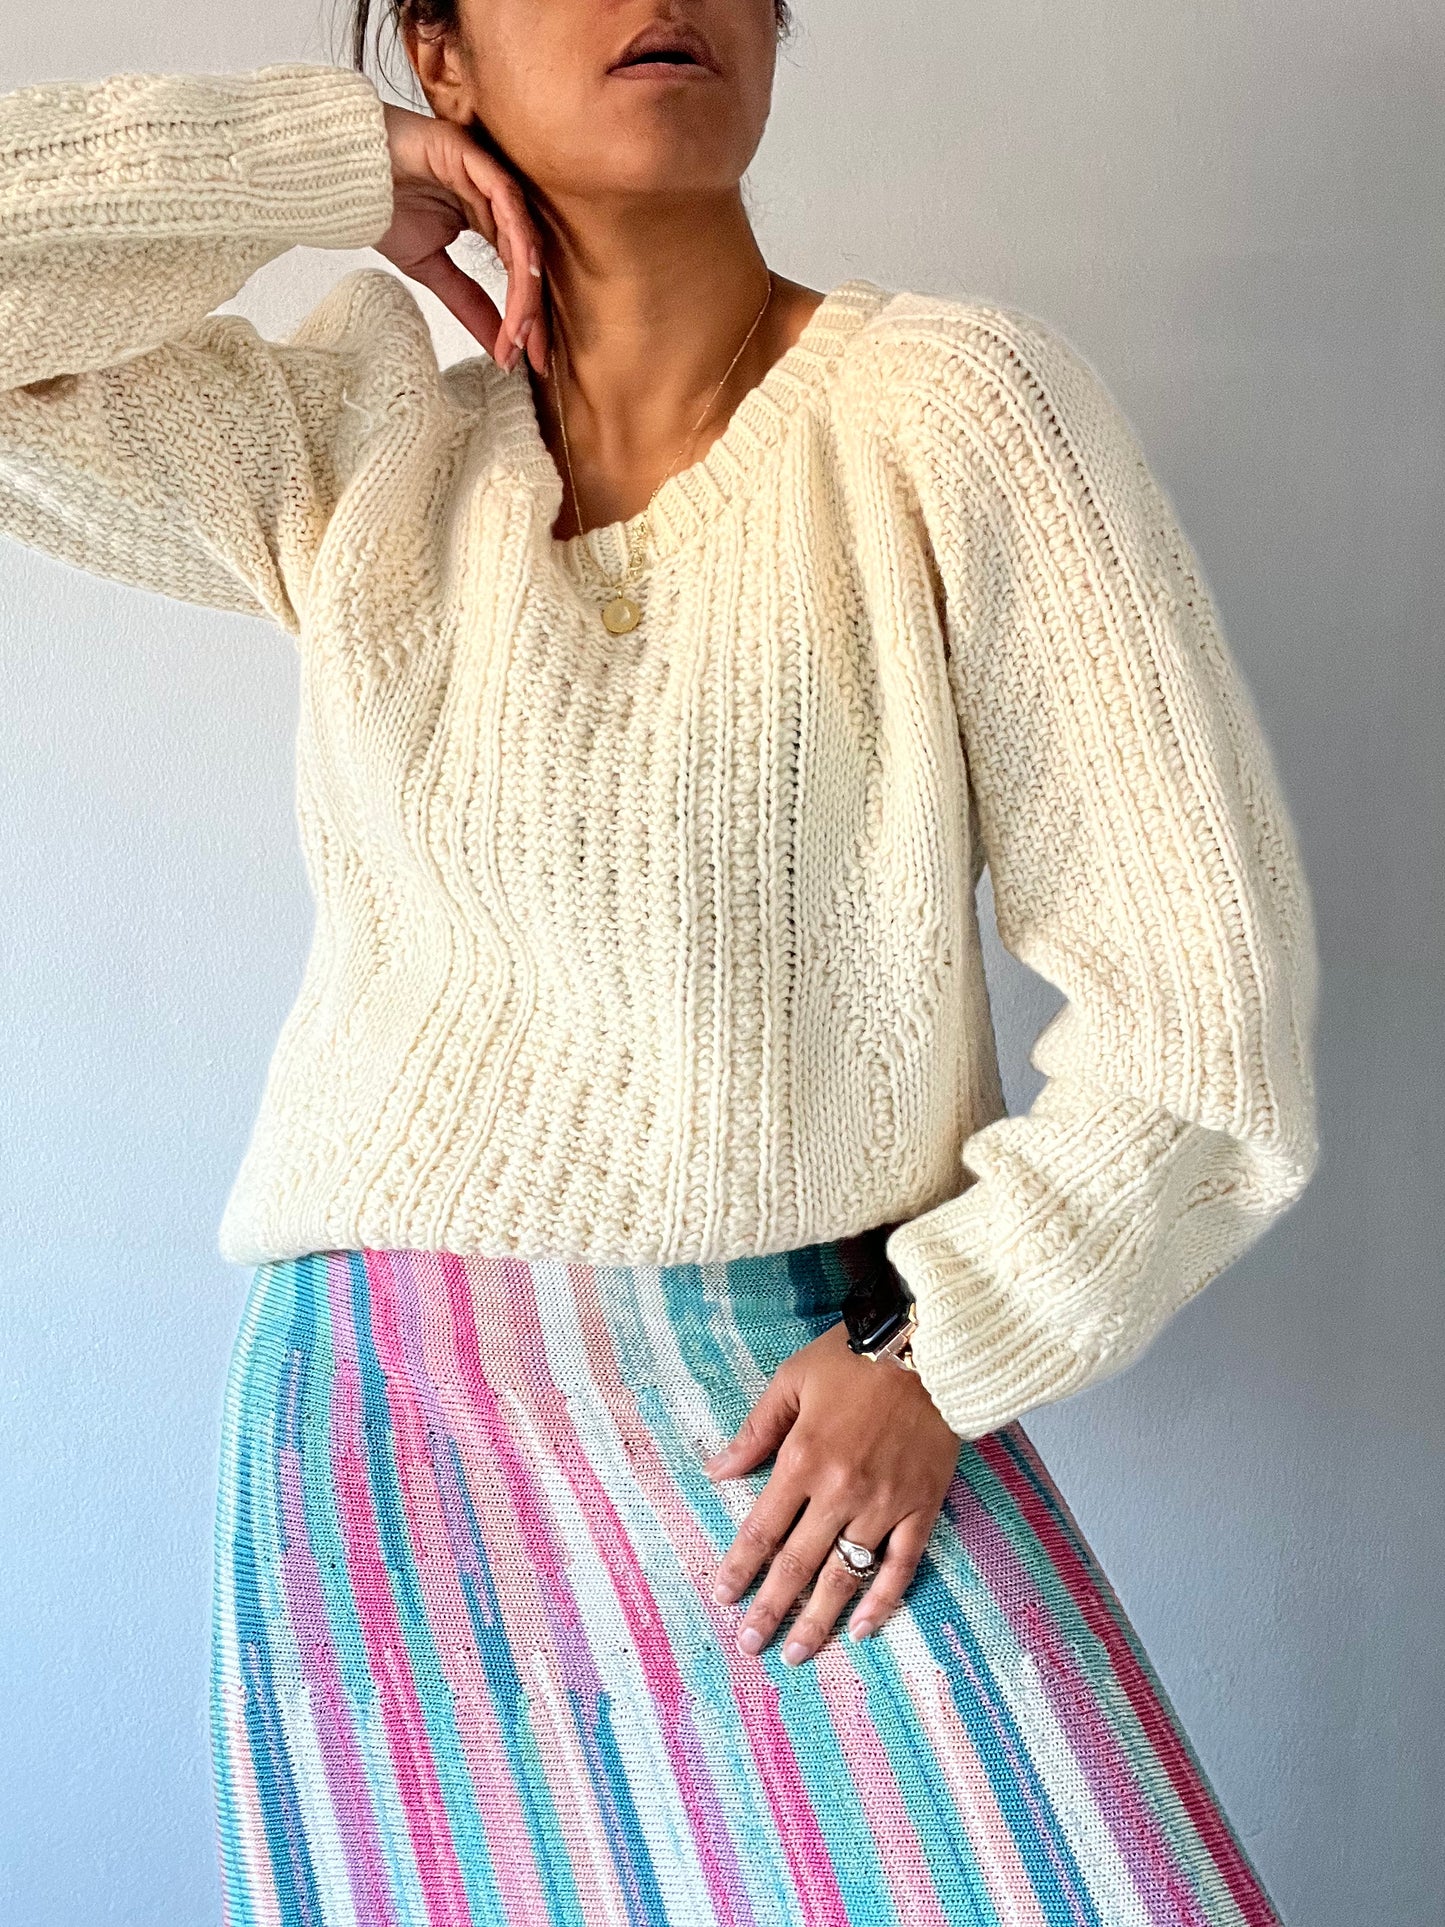 Vintage Candy stripe knit skirt